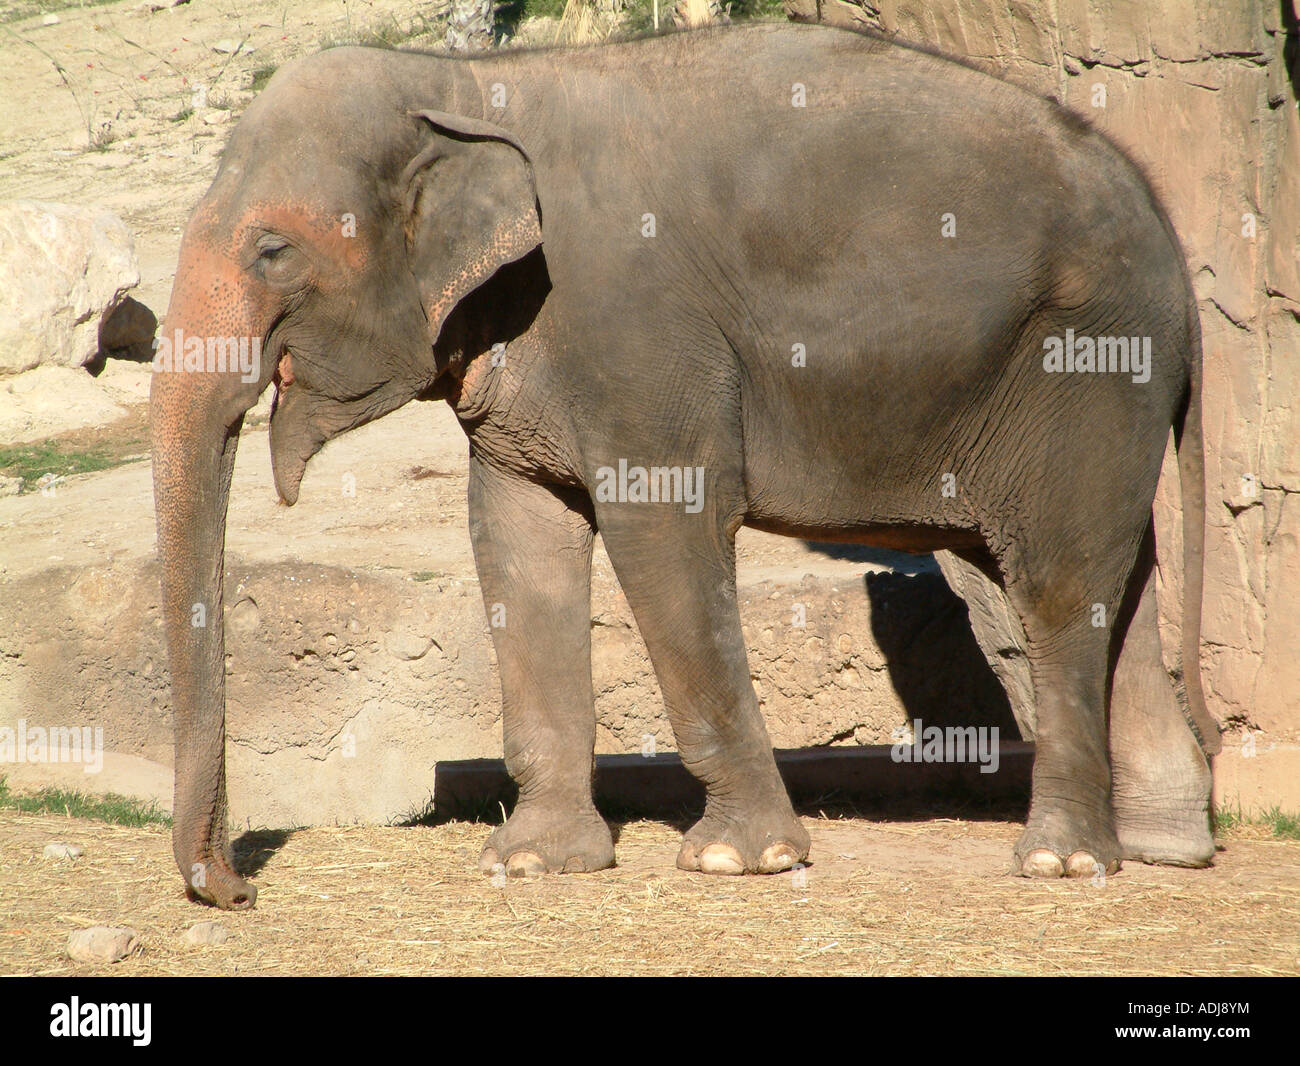 Asian or Indian Elephant, Elaphas maximus Stock Photo